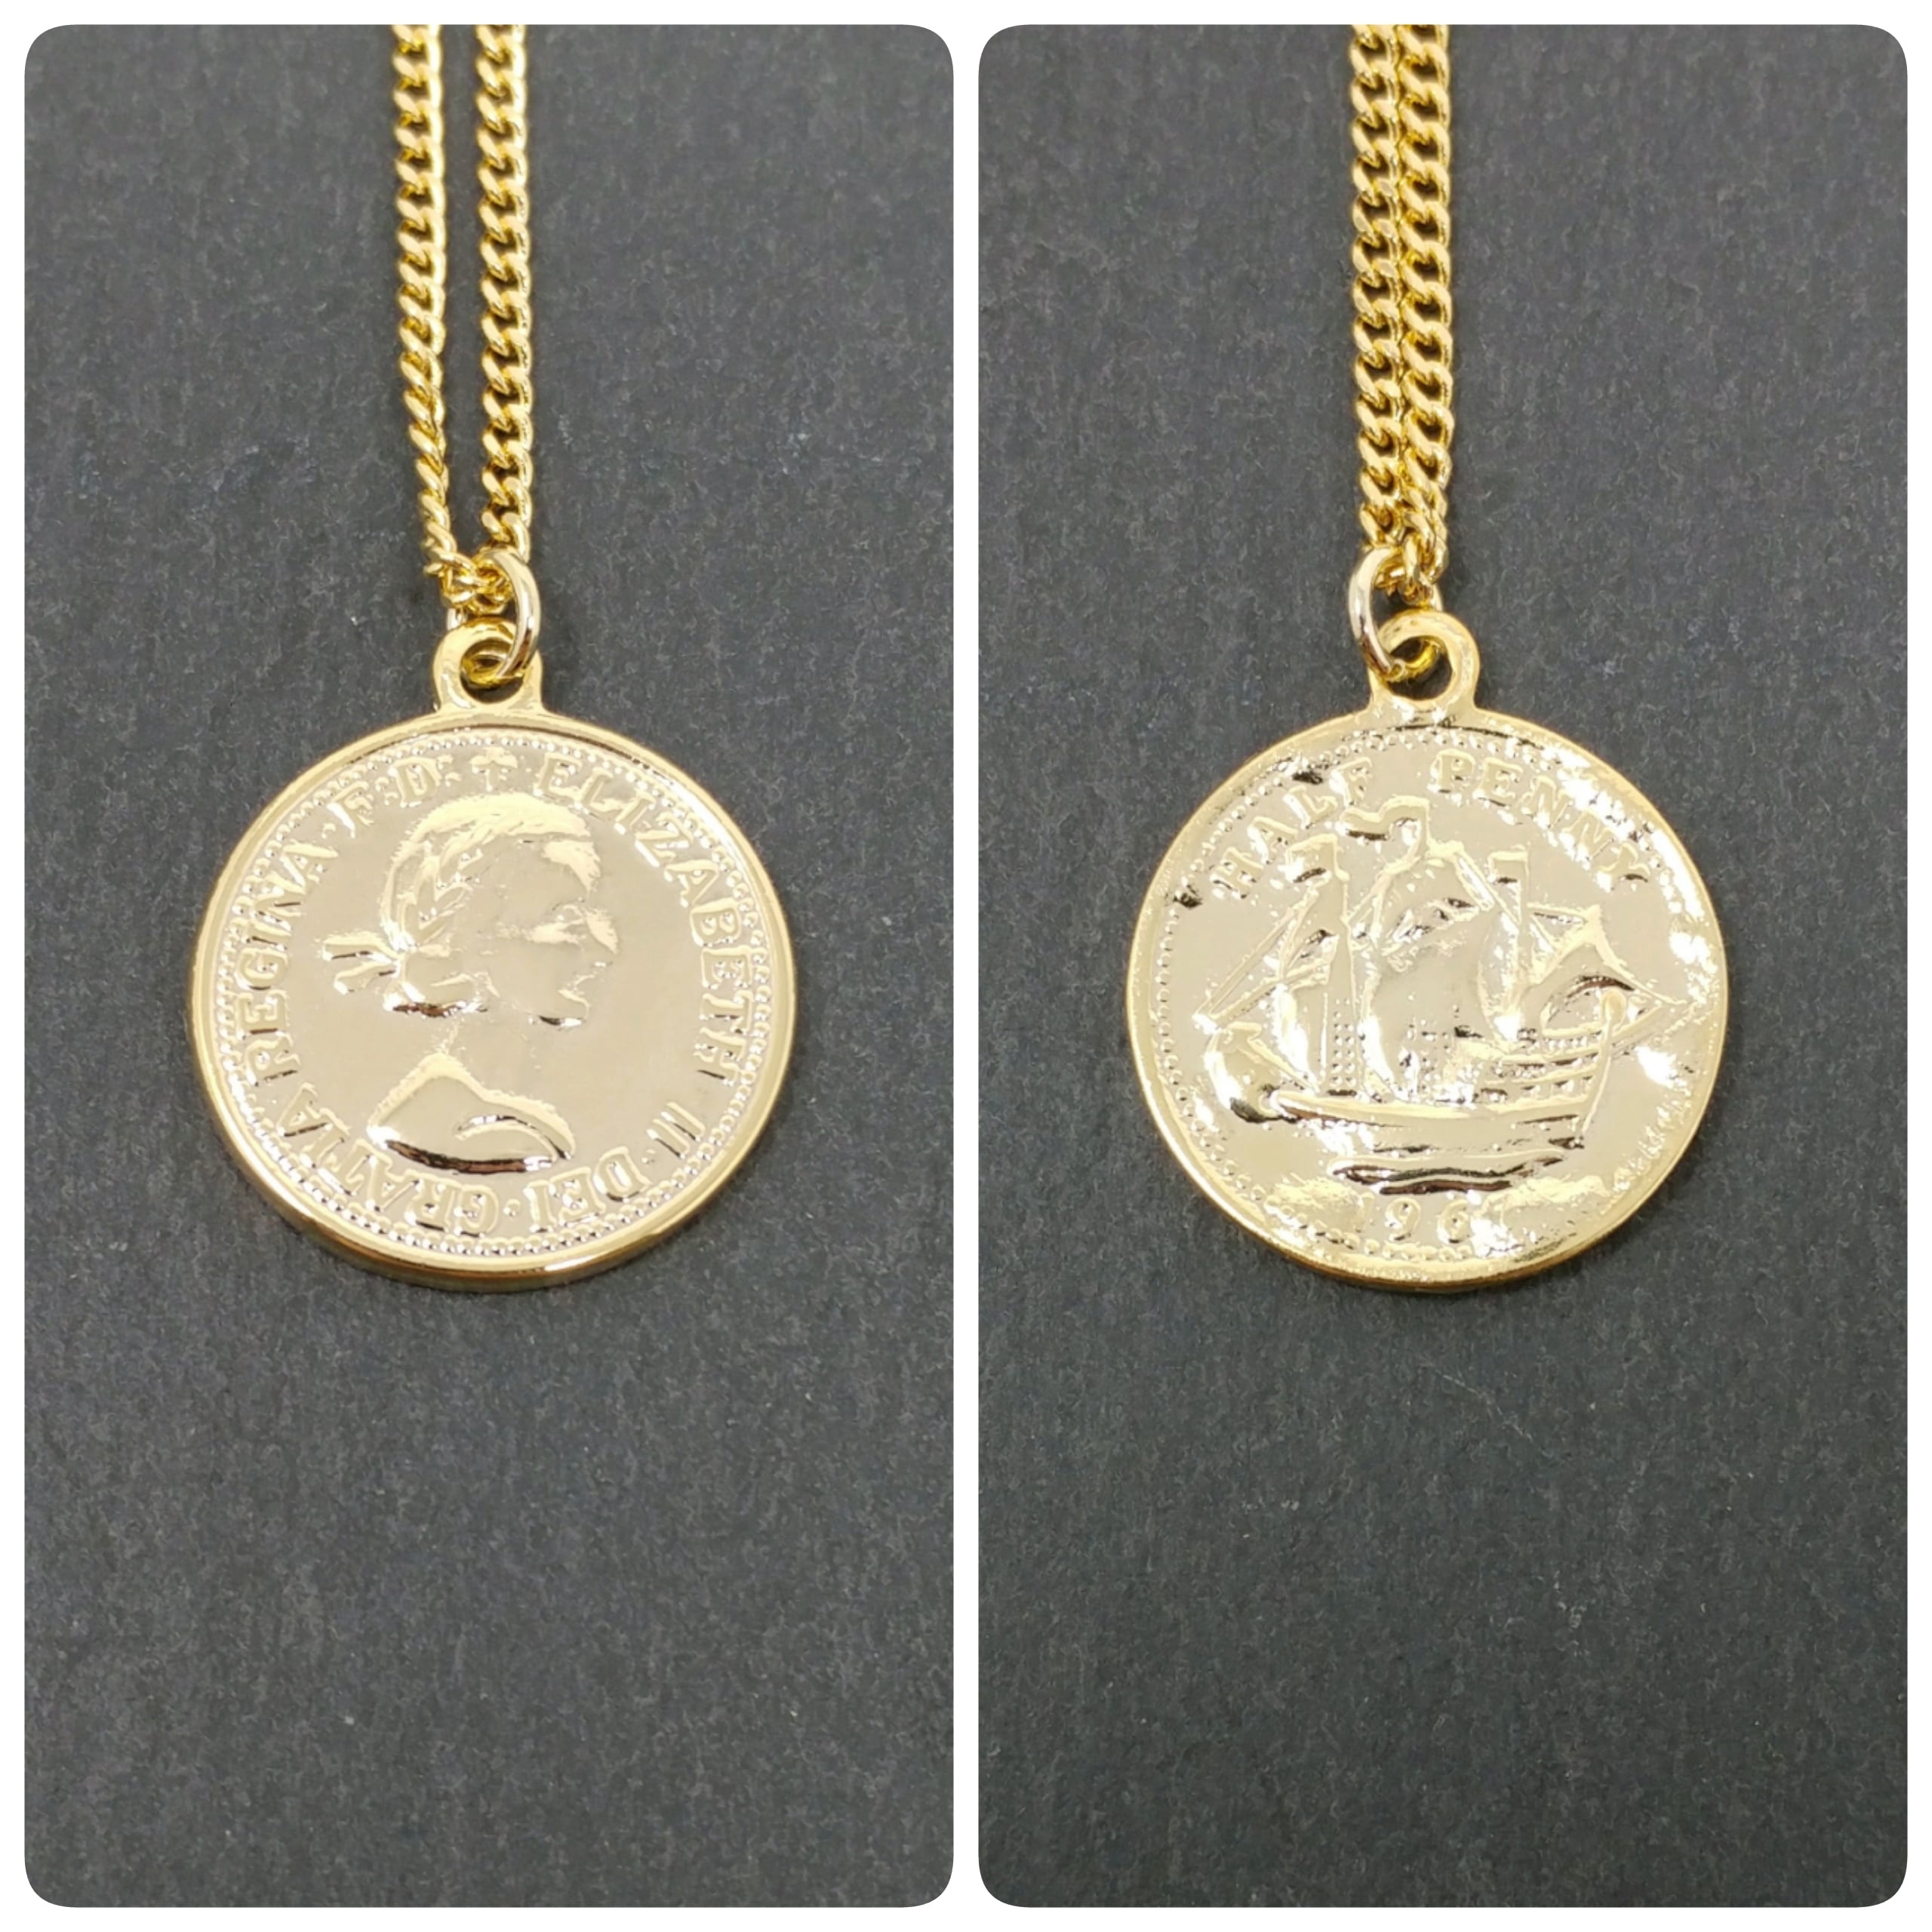 アメリカ硬貨,オールドコイン,5セント,インディアン,ローズメタル,ネックレス